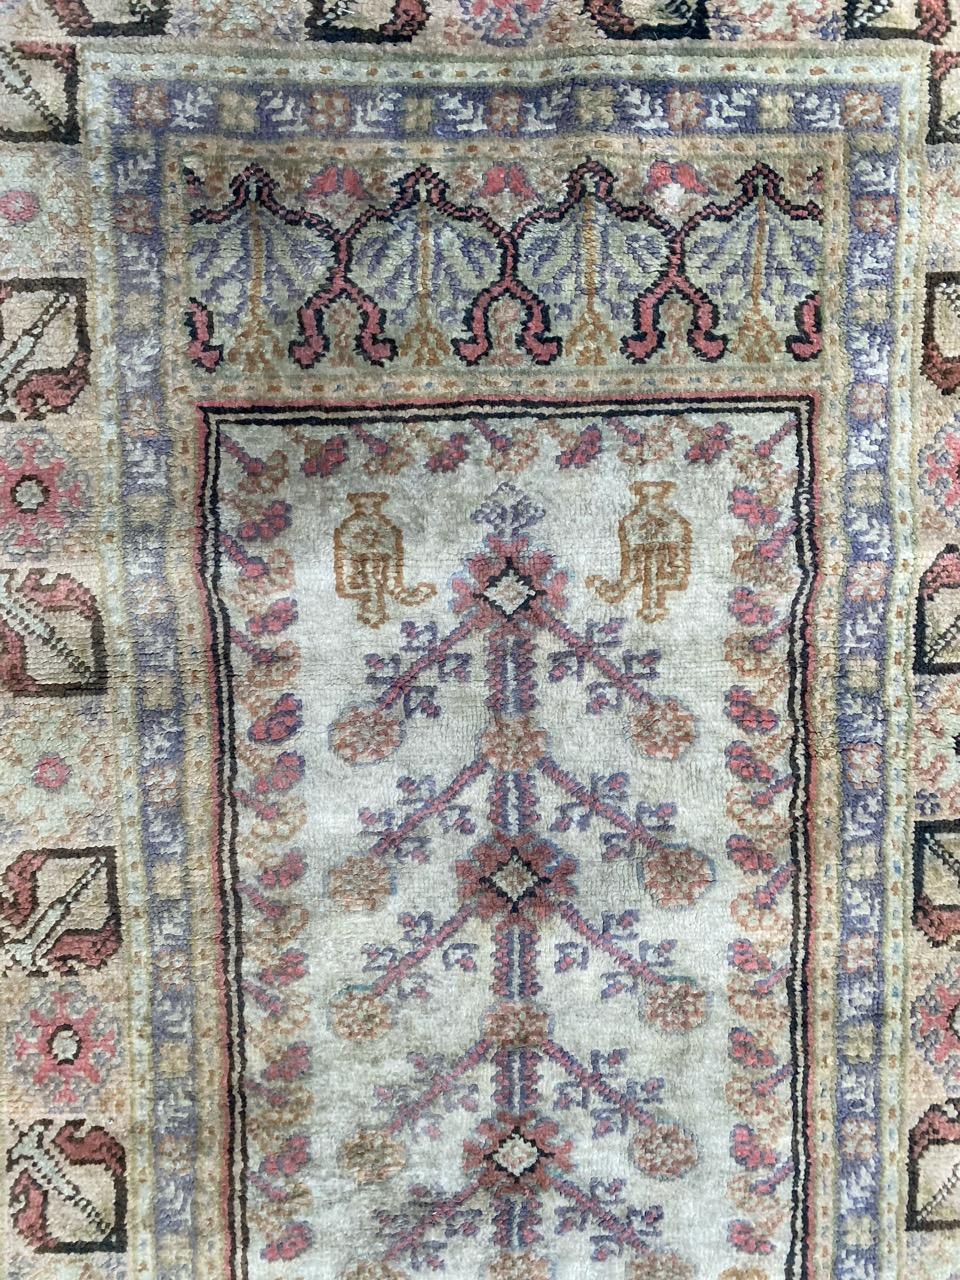 Schöner türkischer Seidenteppich aus der Mitte des Jahrhunderts mit schönem Mihrab-Muster und schönen hellen Farben, vollständig und fein handgeknüpft mit Seide und Baumwolle auf Baumwollbasis.

✨✨✨
